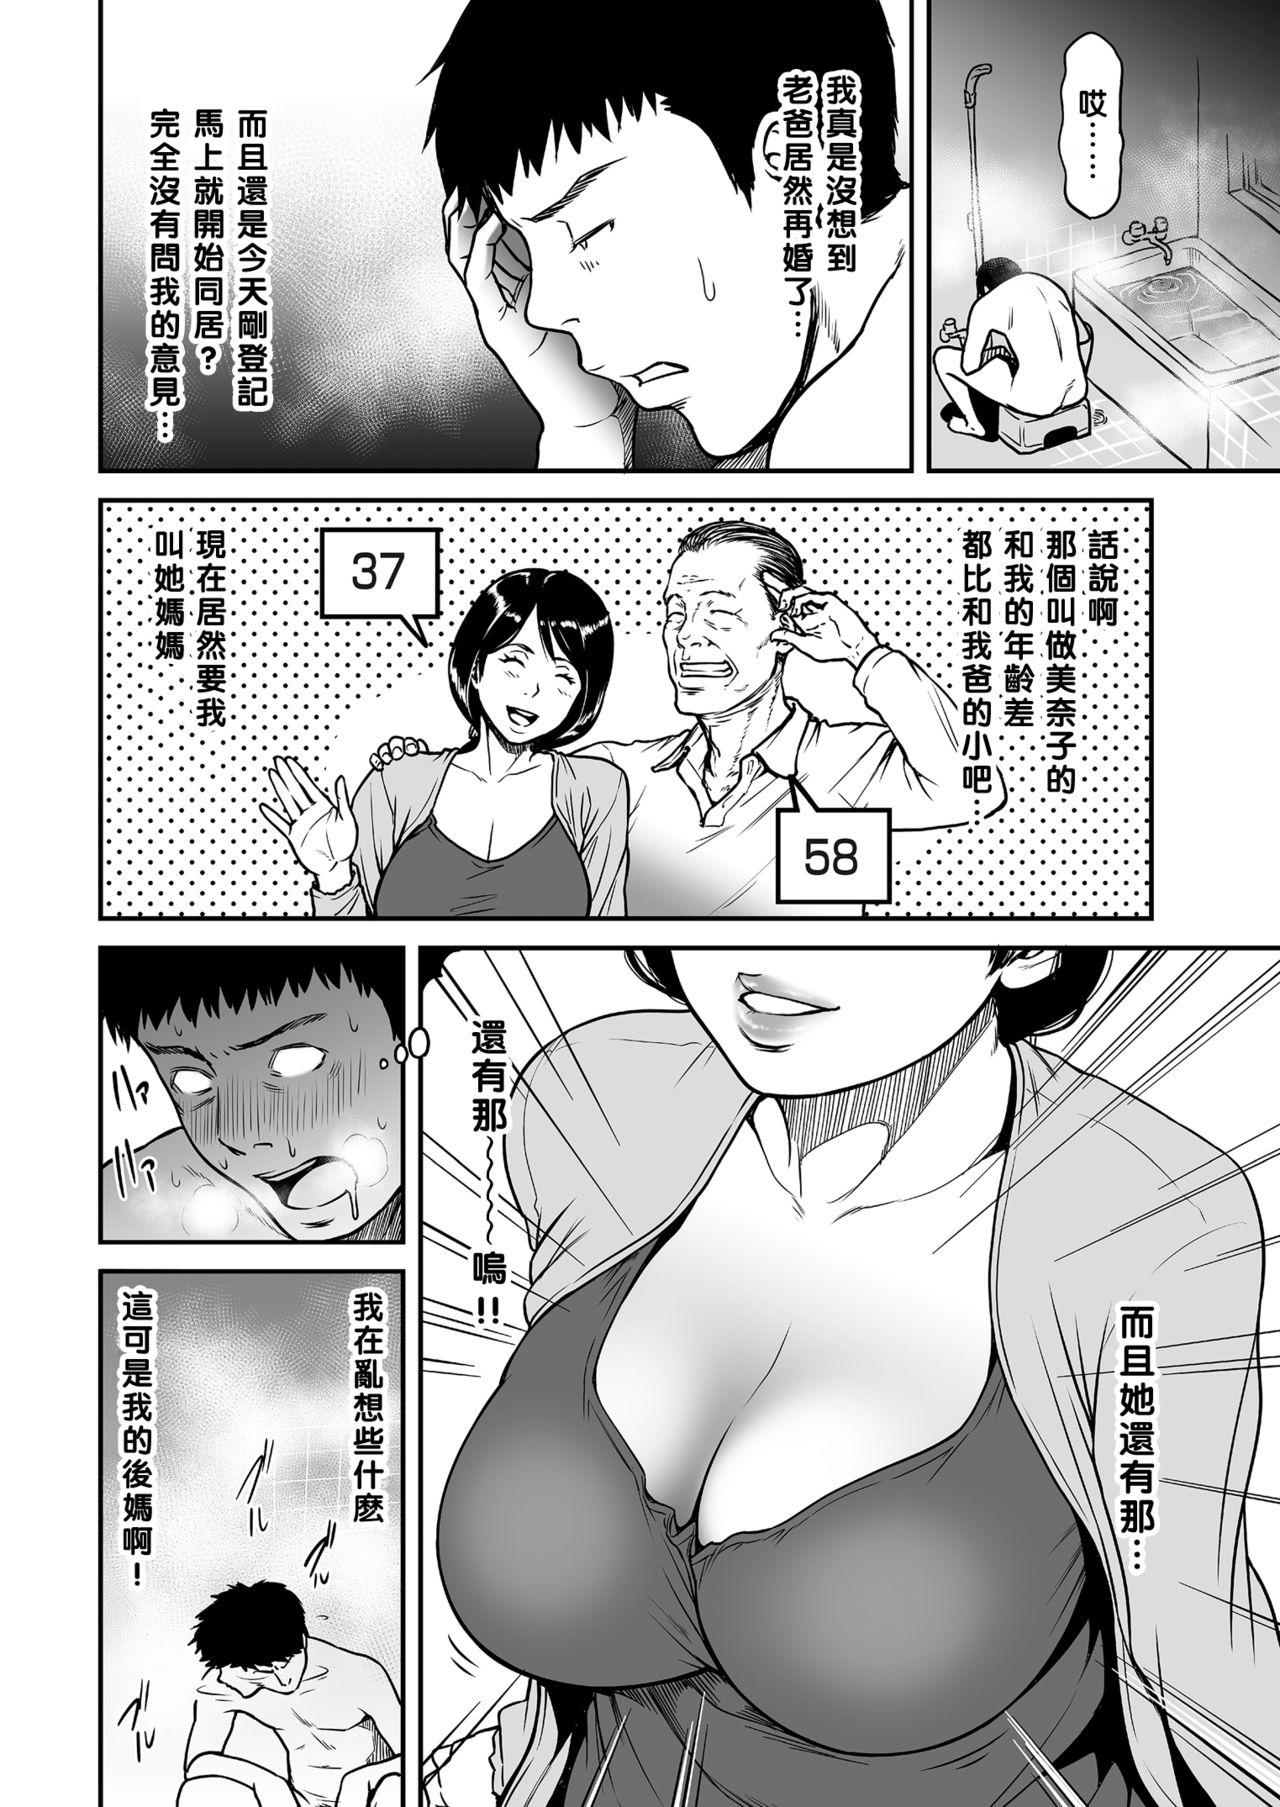 Best Blowjobs Ever Kaa-san ga, Onna no Yosa o Oshiete Ageru. Solo Female - Page 2